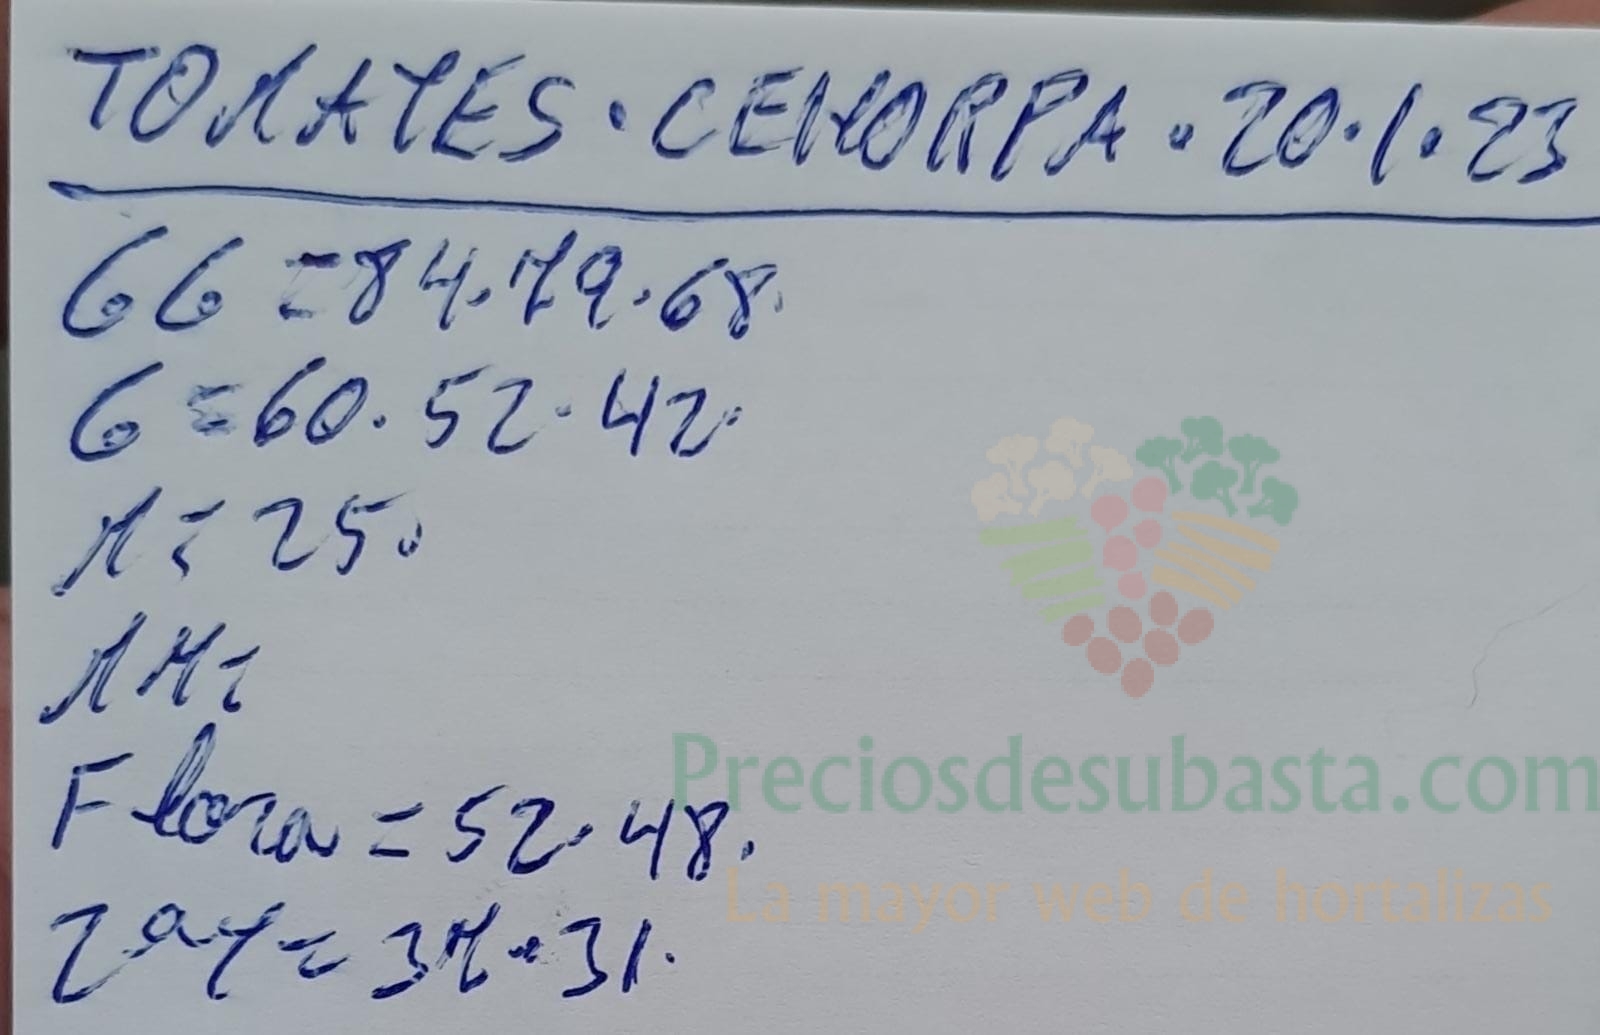 Subasta hortofrutícola Costa de Almería Cehorpa 20 de enero 2023